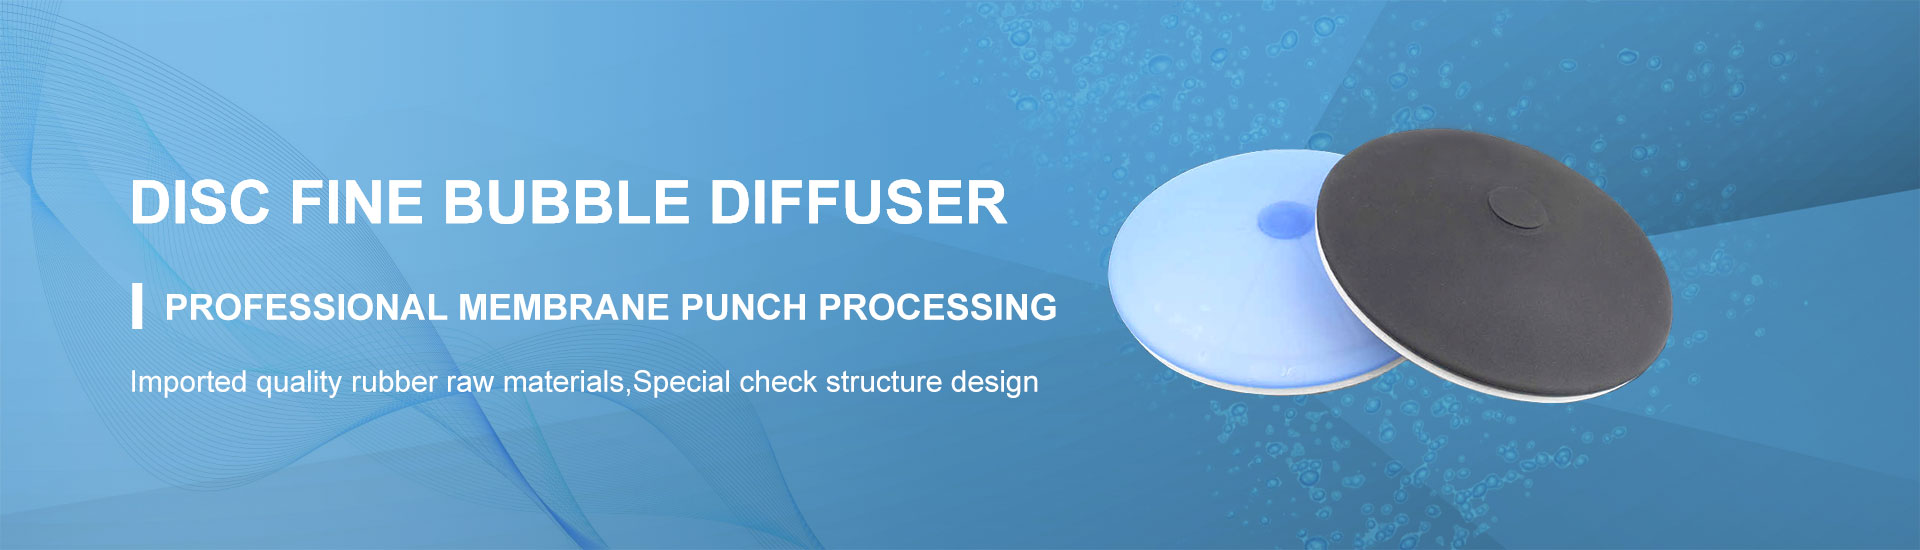 Disc Fine Bubble Diffuser